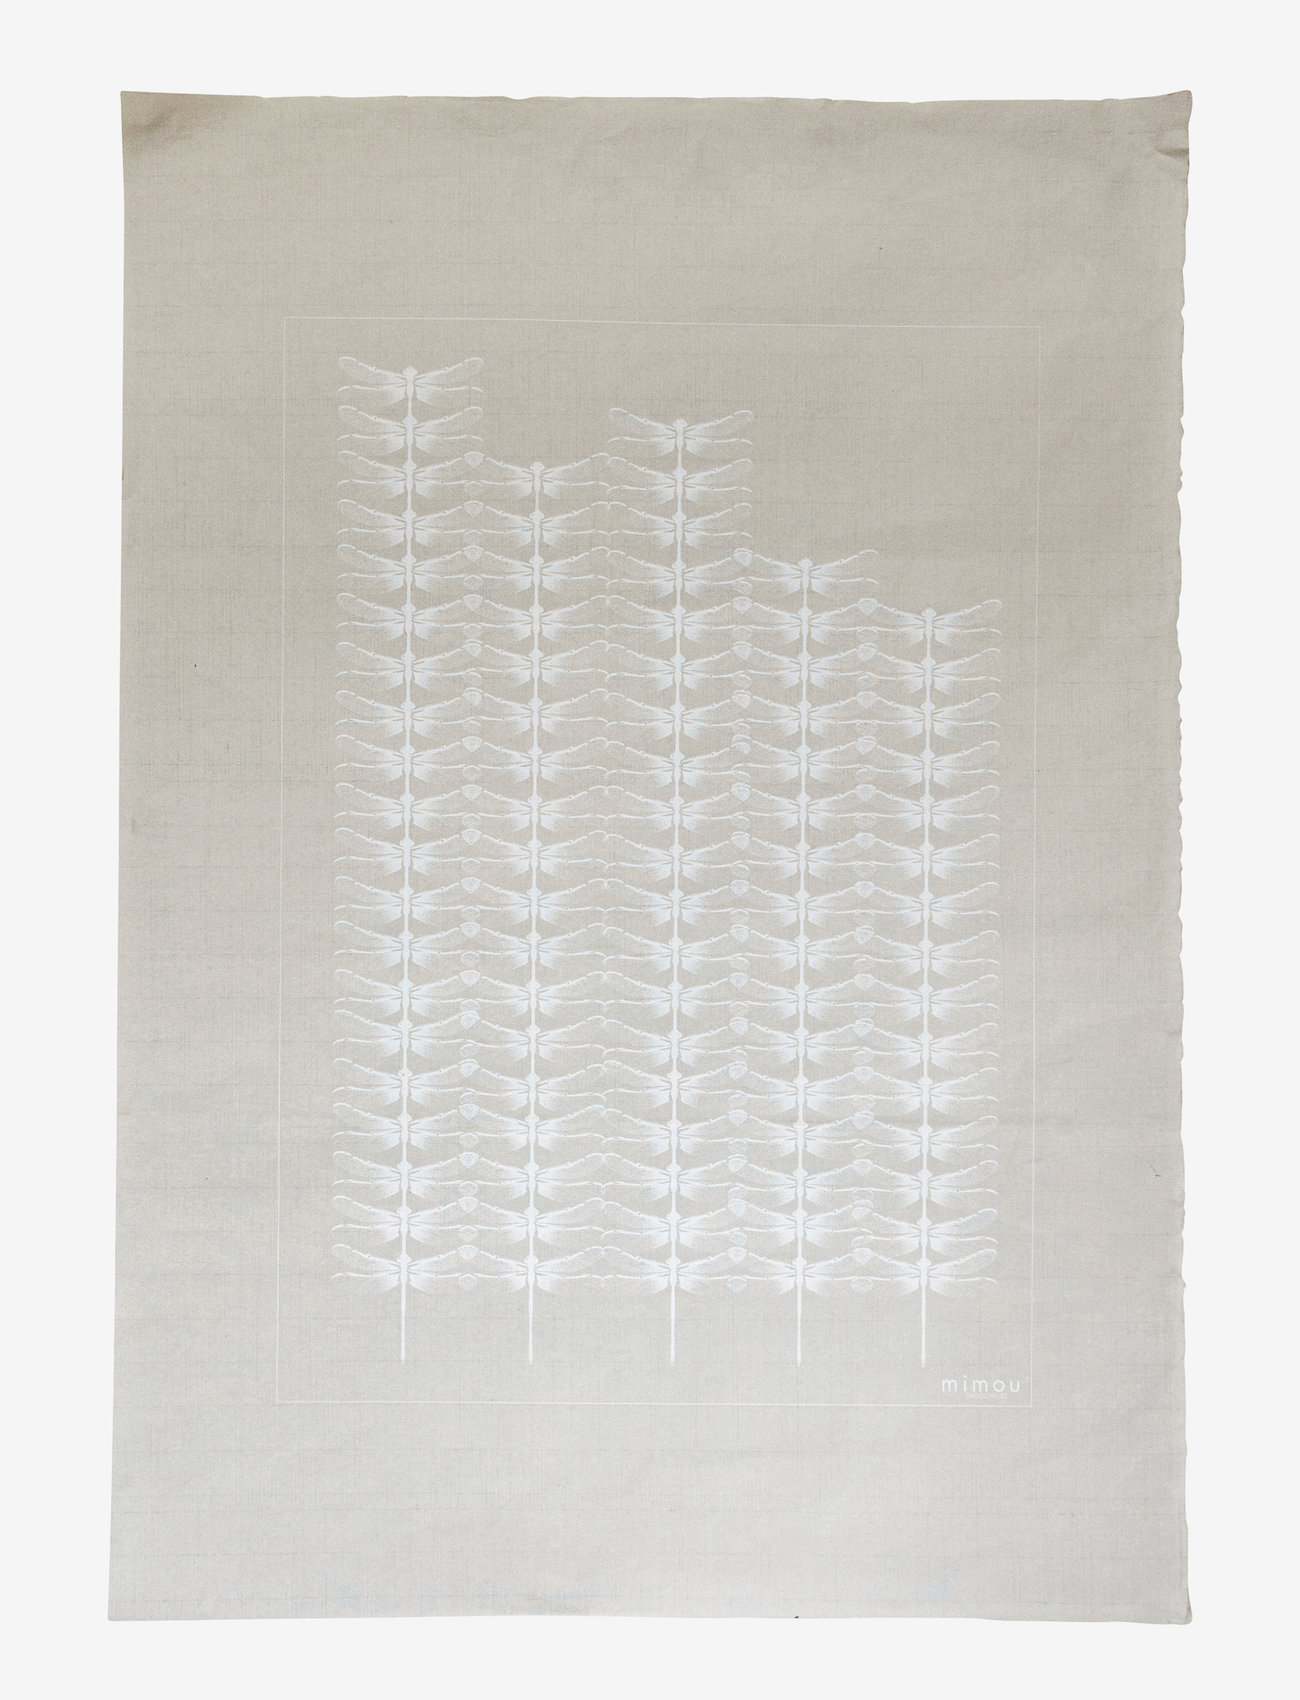 Mimou - Handprinted poster Dragonflies - die niedrigsten preise - white - 0